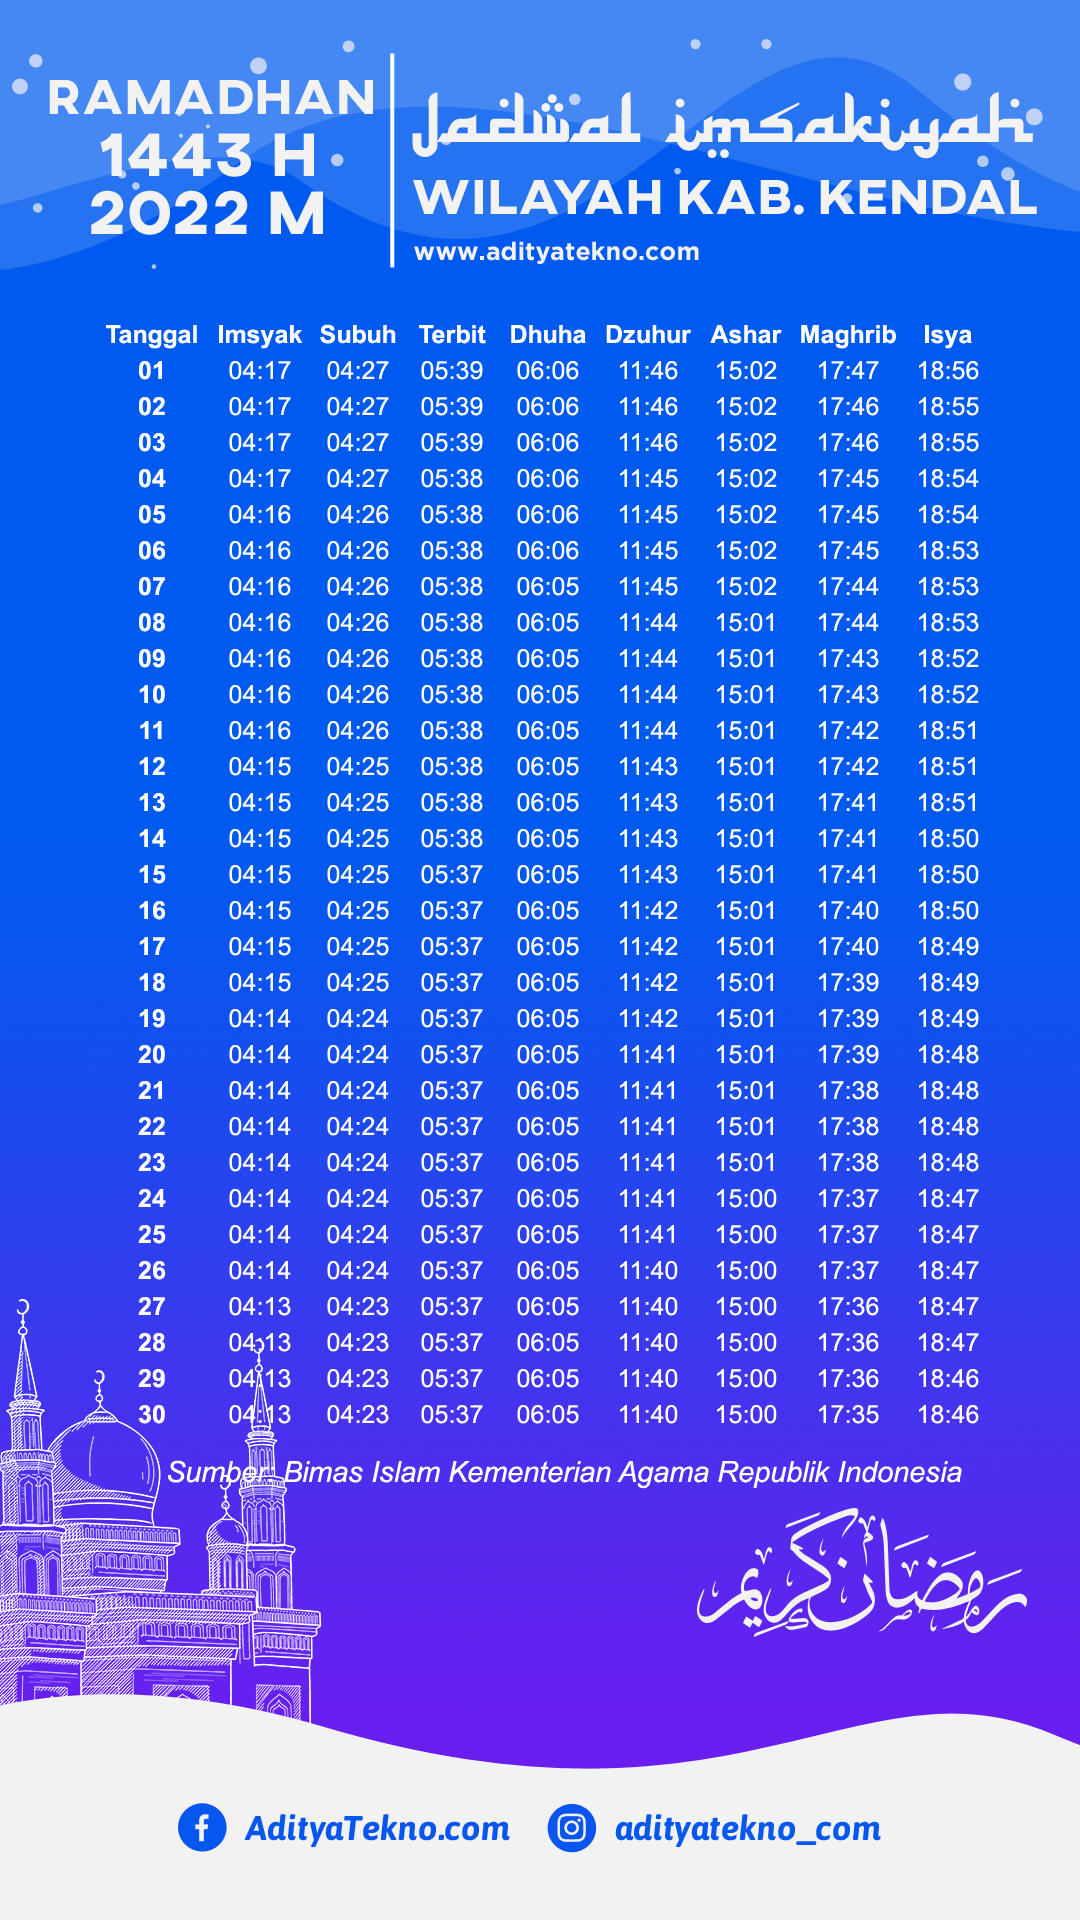 Jadwal Imsakiyah Ramadhan 2022/1443 H Wilayah Kab. Kendal